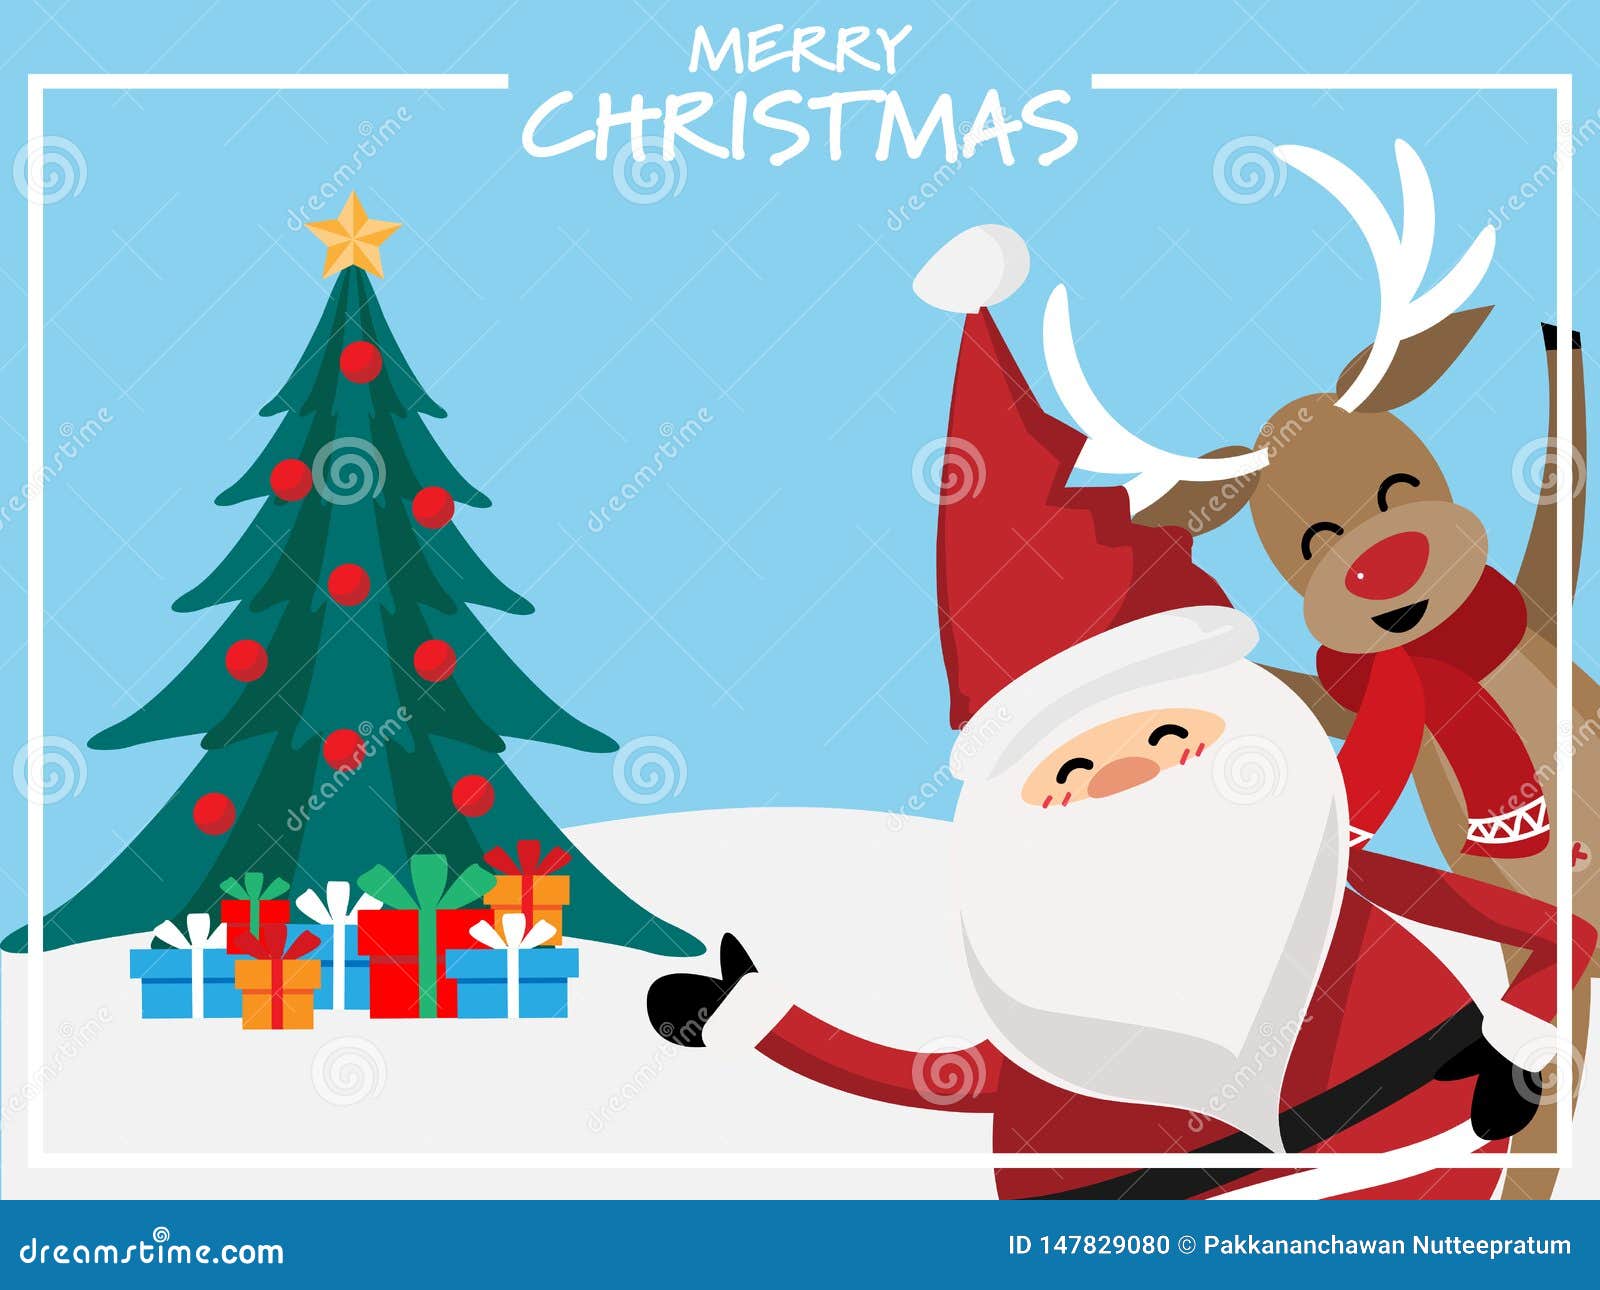 Bộ tranh hoạt hình Giáng sinh sẽ đem lại không khí lễ hội ấm áp đầy sắc màu cho bạn. Nền đồ hoạ Giáng sinh với những hình ảnh ngộ nghĩnh, dễ thương chắc chắn sẽ làm bạn cảm thấy vui tươi và đầy niềm tin vào tình yêu thương!